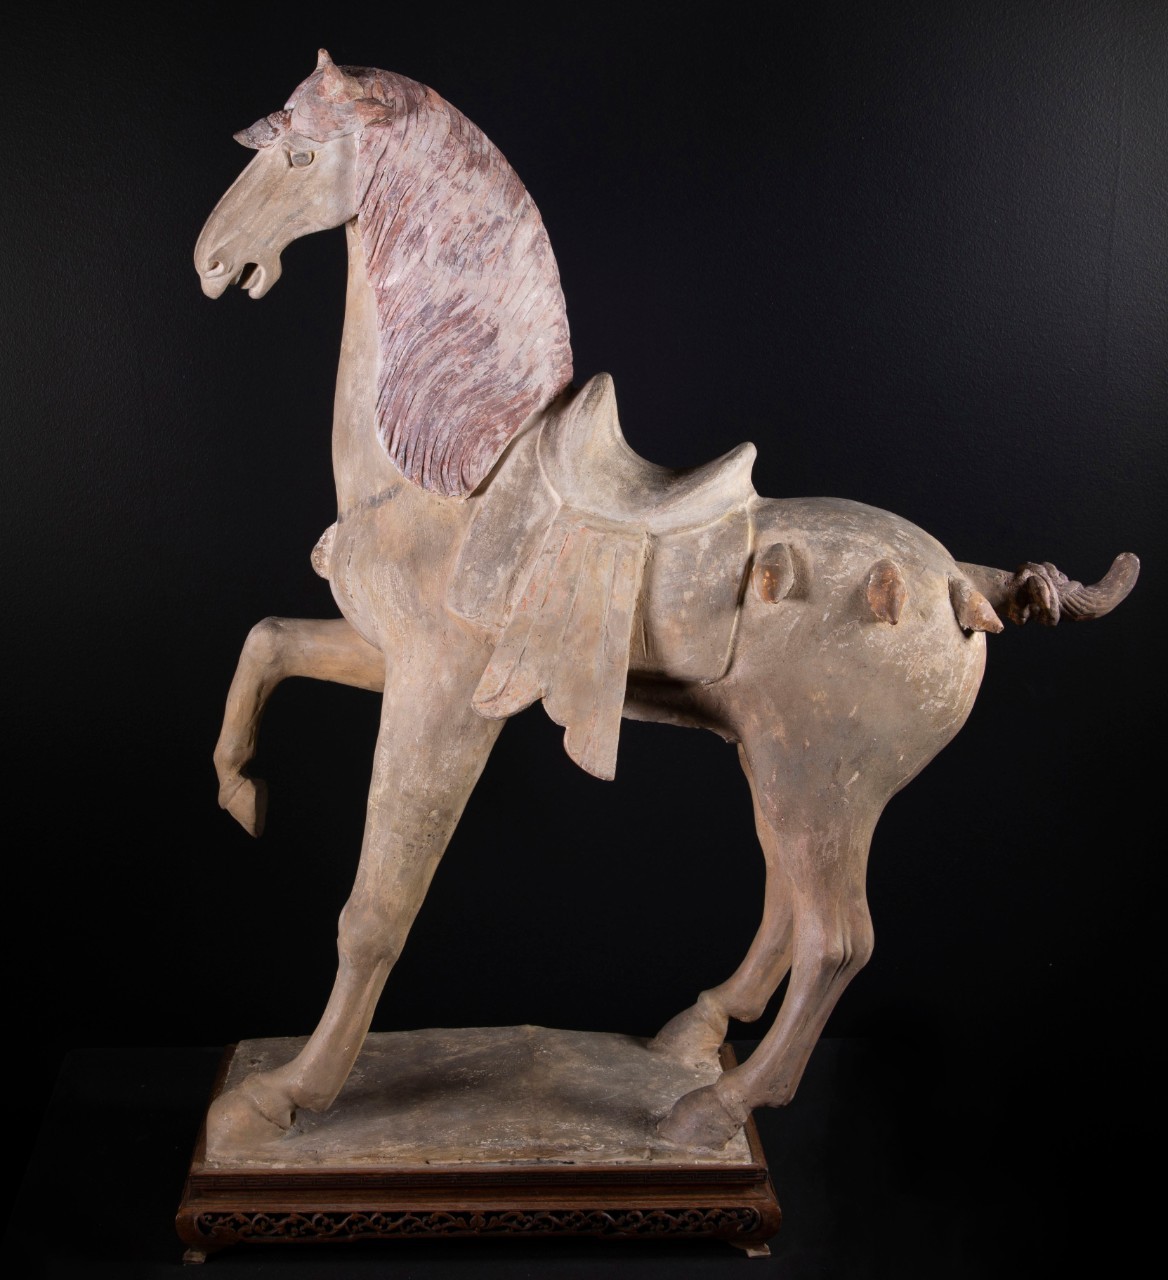 O cavalo dançante de terracota tinha uma borla na testa que despertou a curiosidade dos curadores do Museu de Arte de Cincinnati. (Foto: Cincinnati Art Museum/Gift of Carl and Eleanor Strauss, 1997)